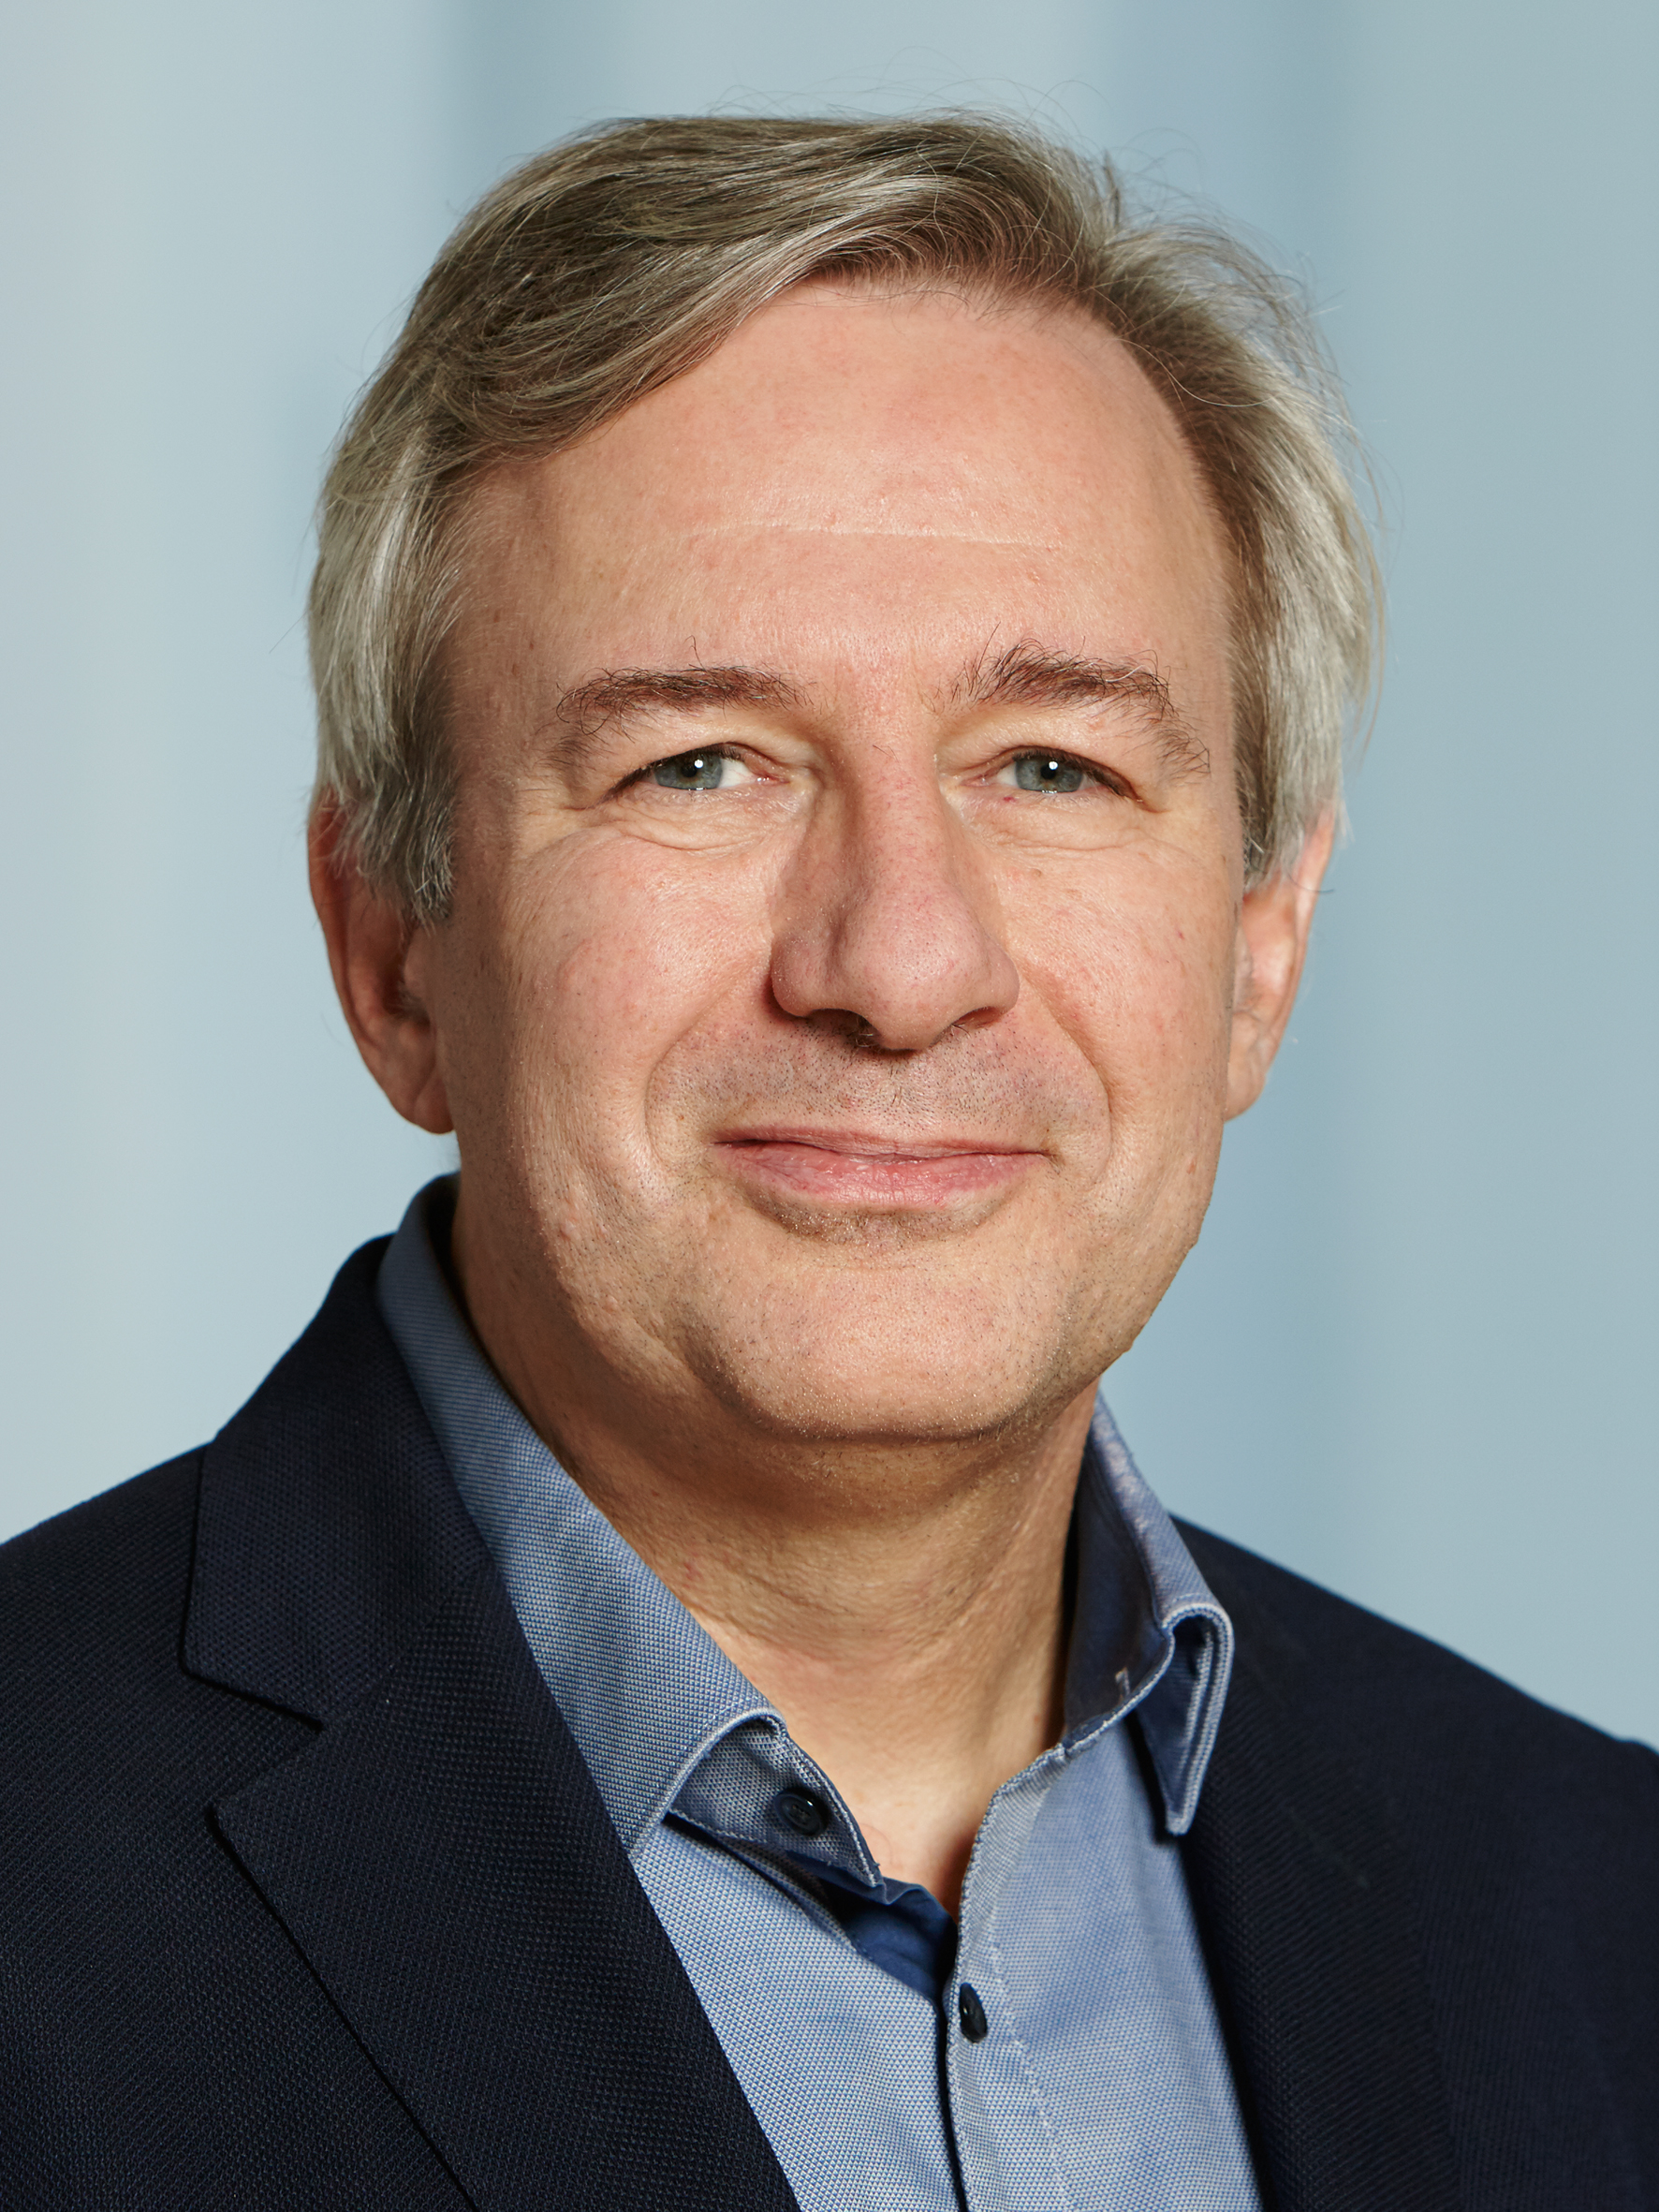 Prof. Frank Schimmelfennig